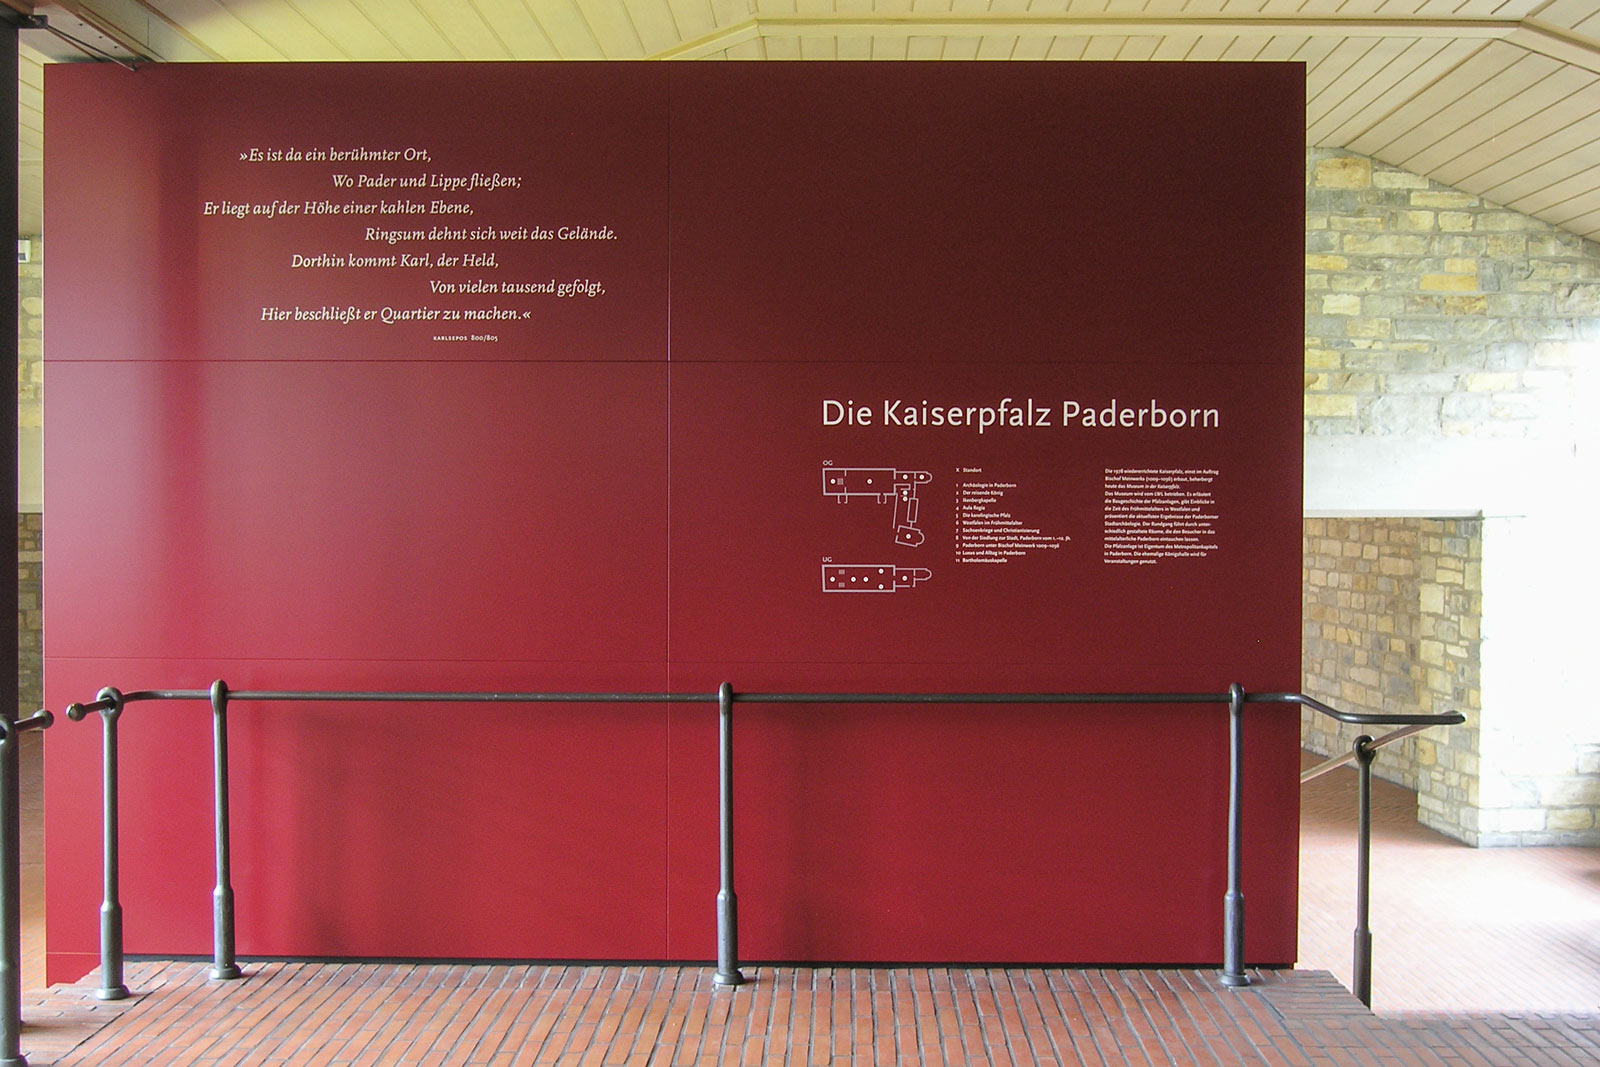 Das Referenzbild für Ausstellungsgestaltung aus der Dauerausstellung „Der Kaiser kehrt zurück“ zeigt das Leitsystem mit Infografik im markanten Farbkonzept.